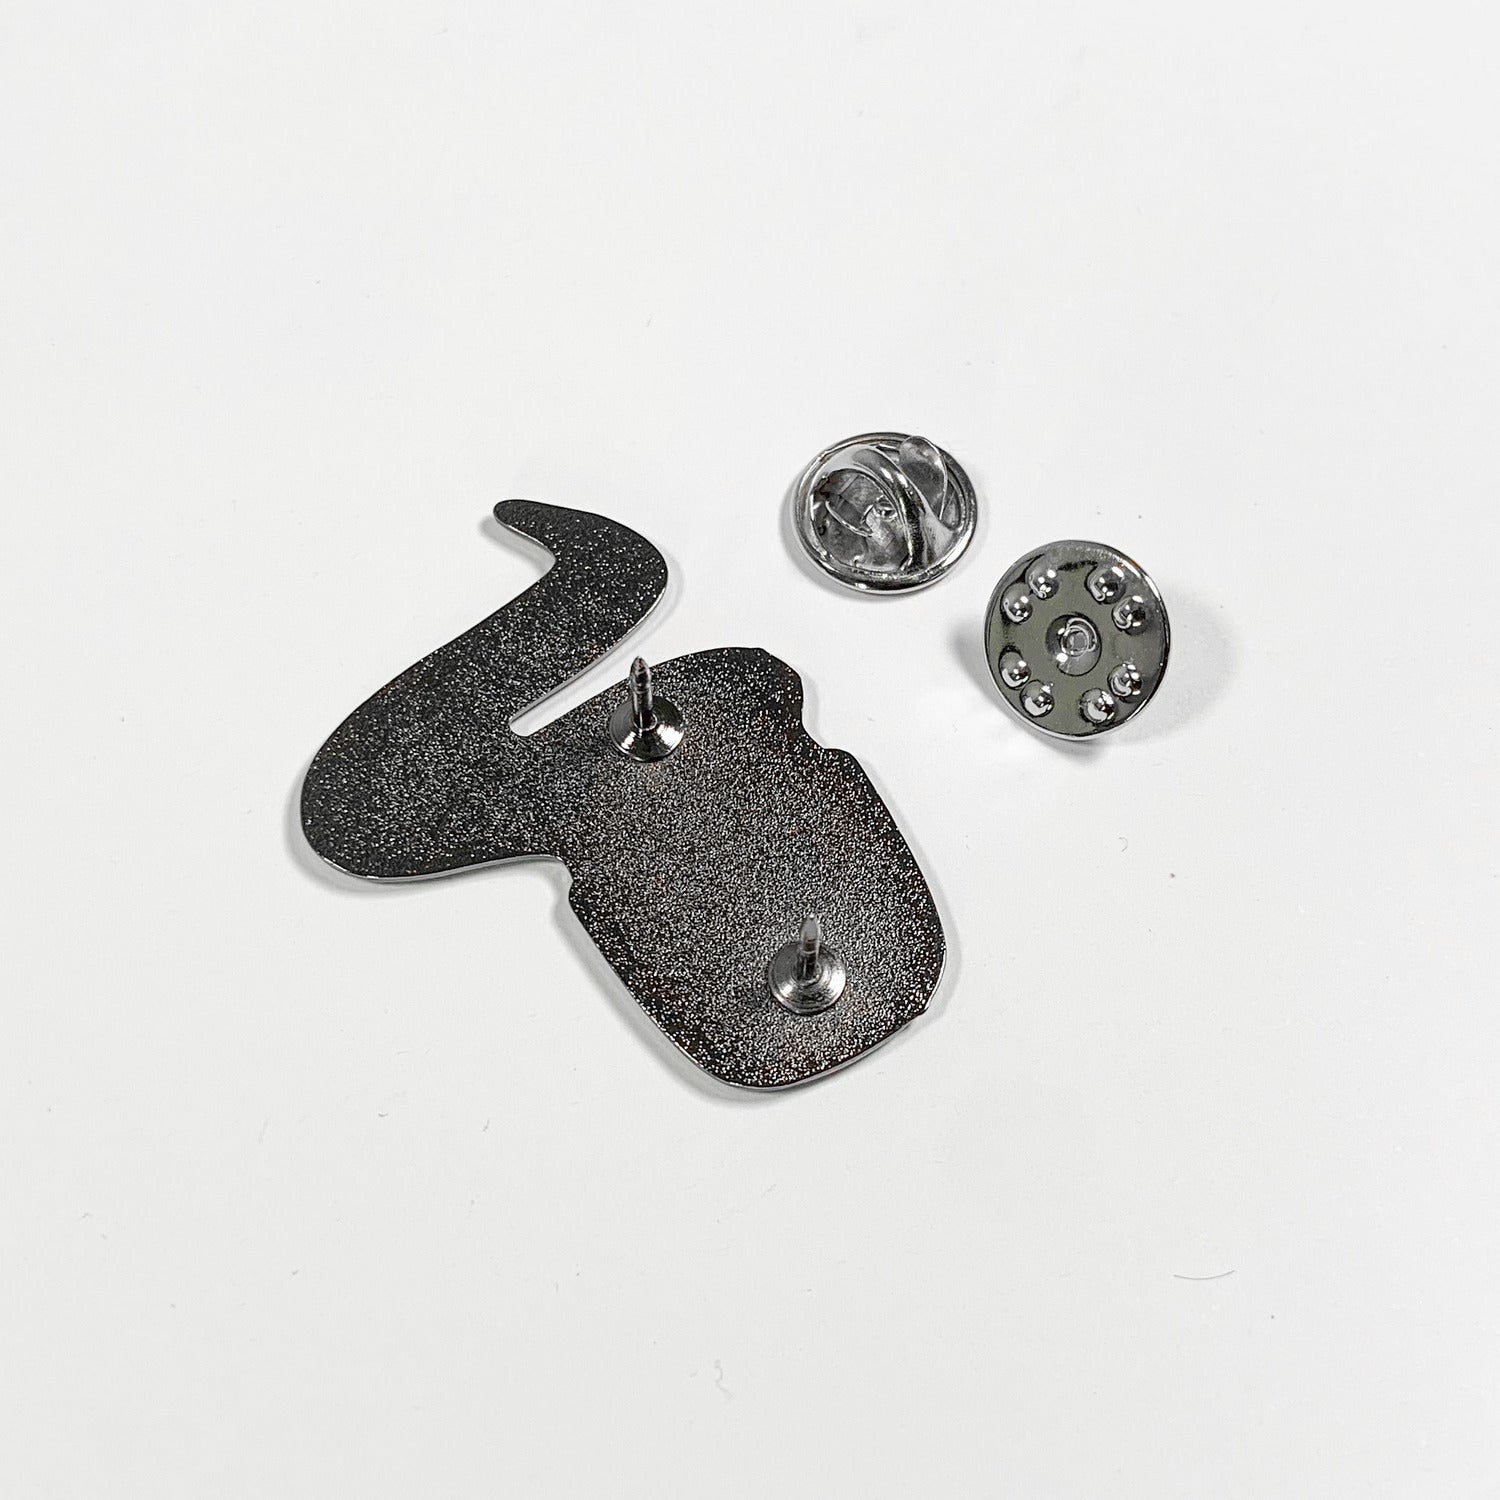 Assorted Pin Backs – Broken Bartender